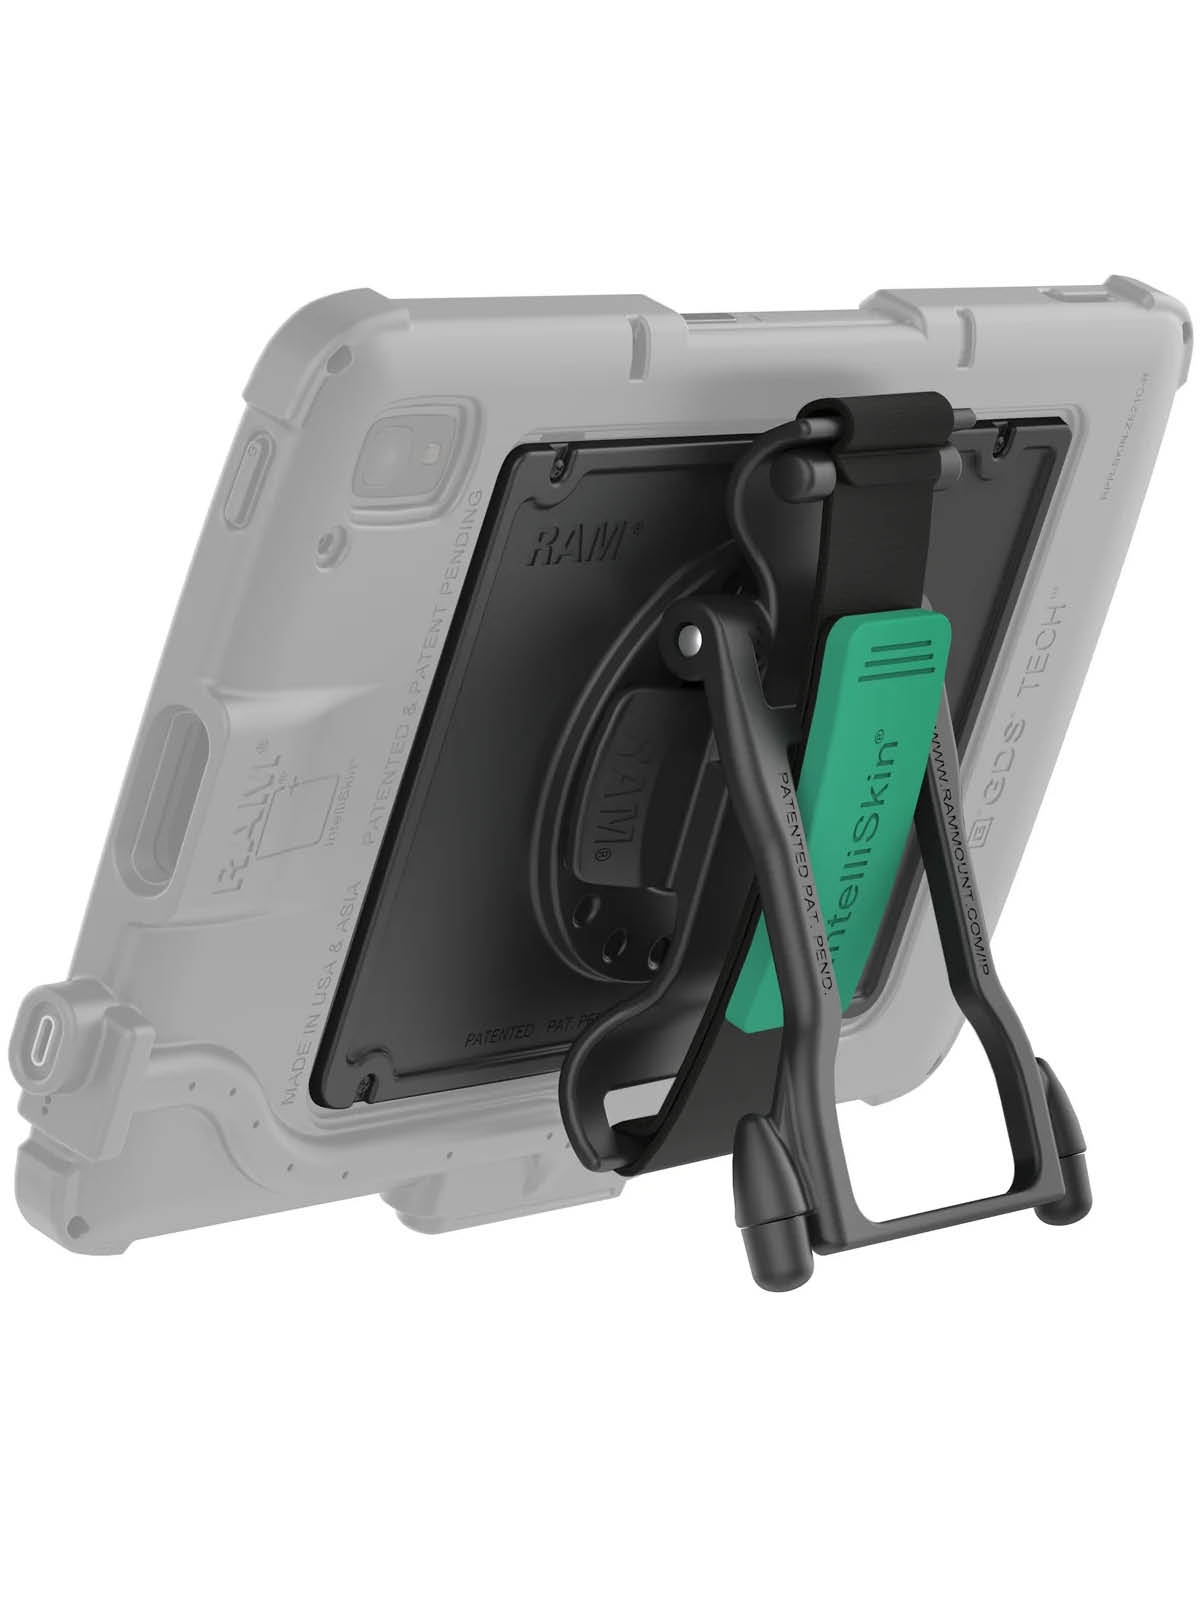 RAM Mounts magnetische GDS Handschlaufe für Zebra ET4x 10 Zoll Enterprise Tablet - IntelliSkin-Hülle oder OEM Schutzgehäuse, Standfunktion